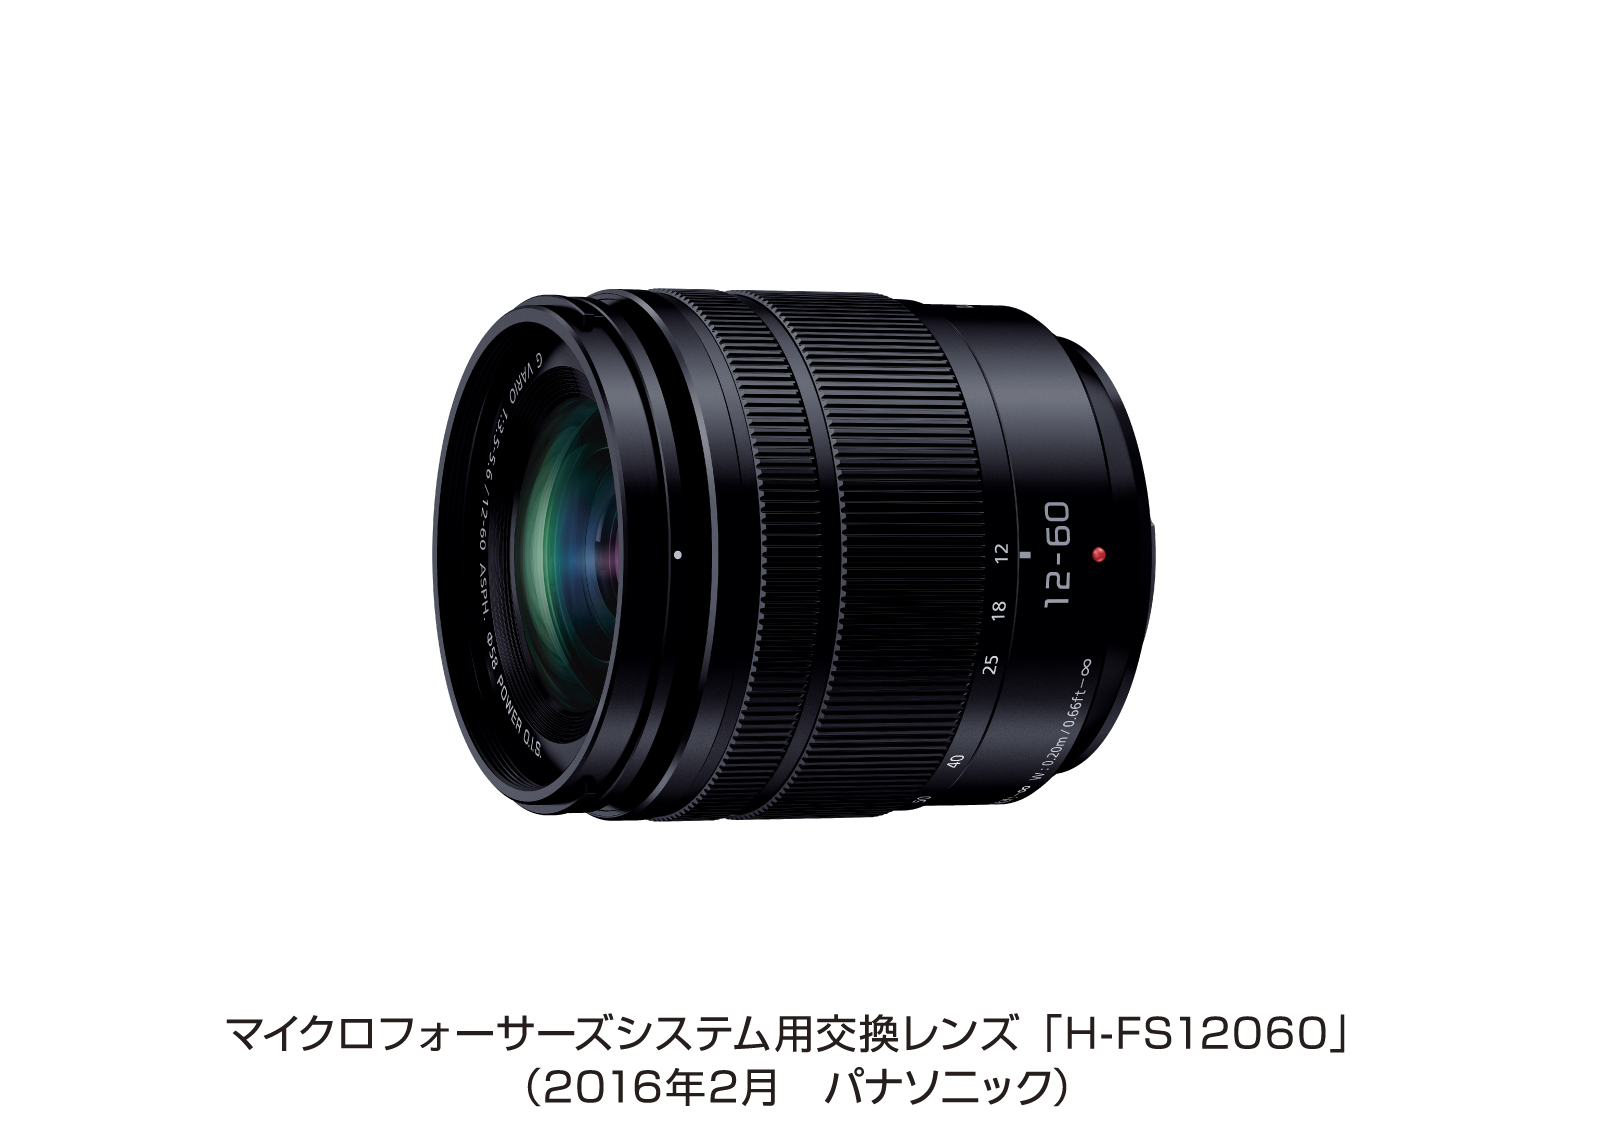 マイクロフォーサーズシステム用交換レンズ「H-FS12060」